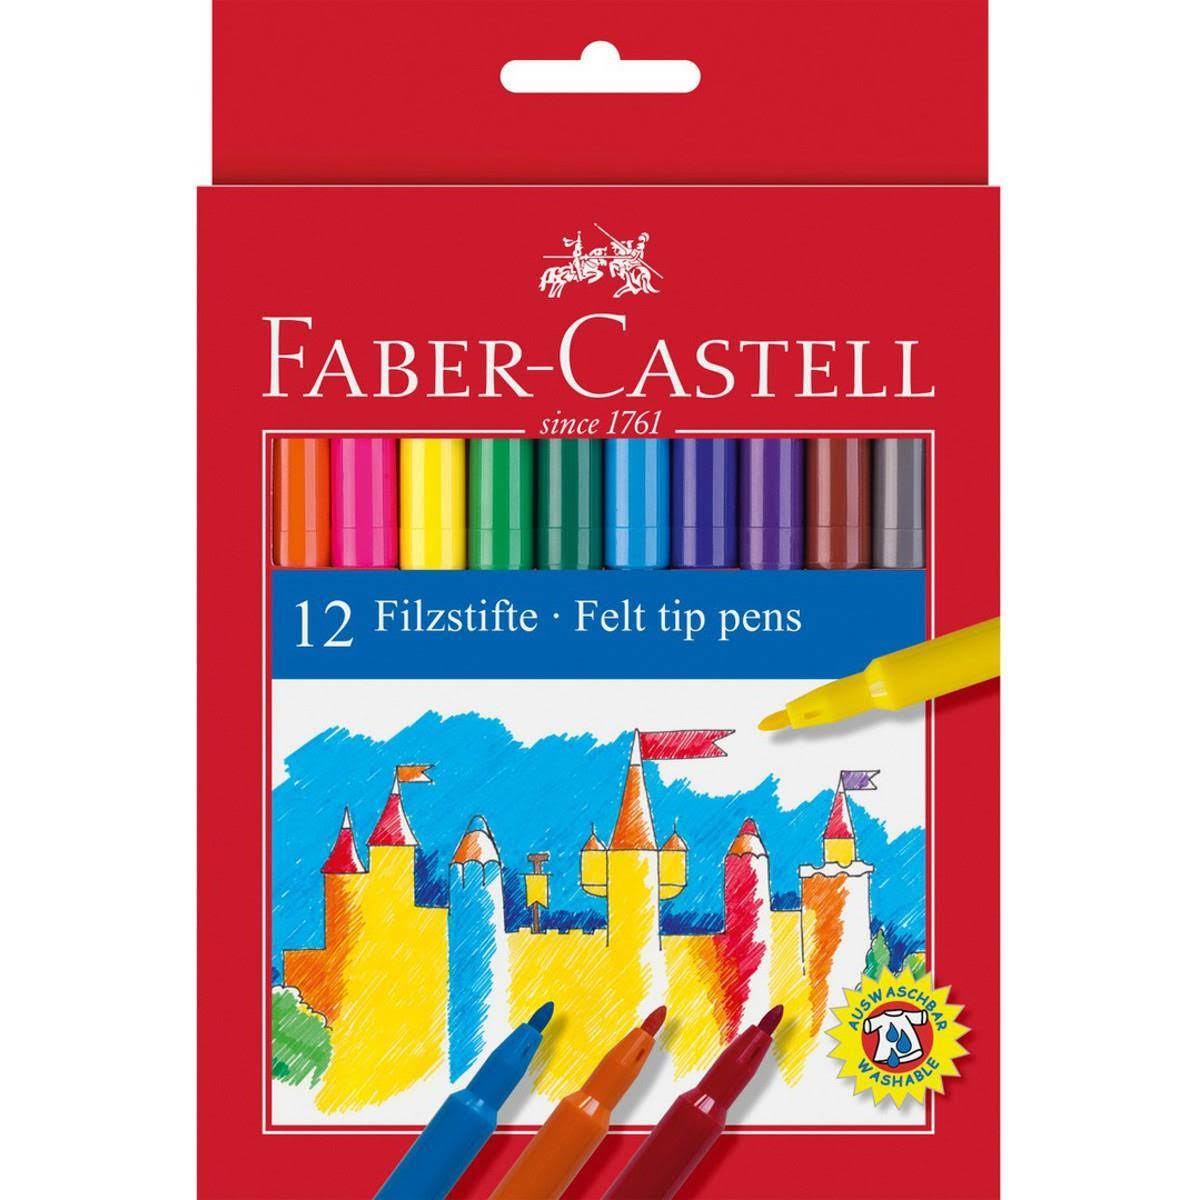 Faber-Castell Felt Tip Pens - 12 Colours